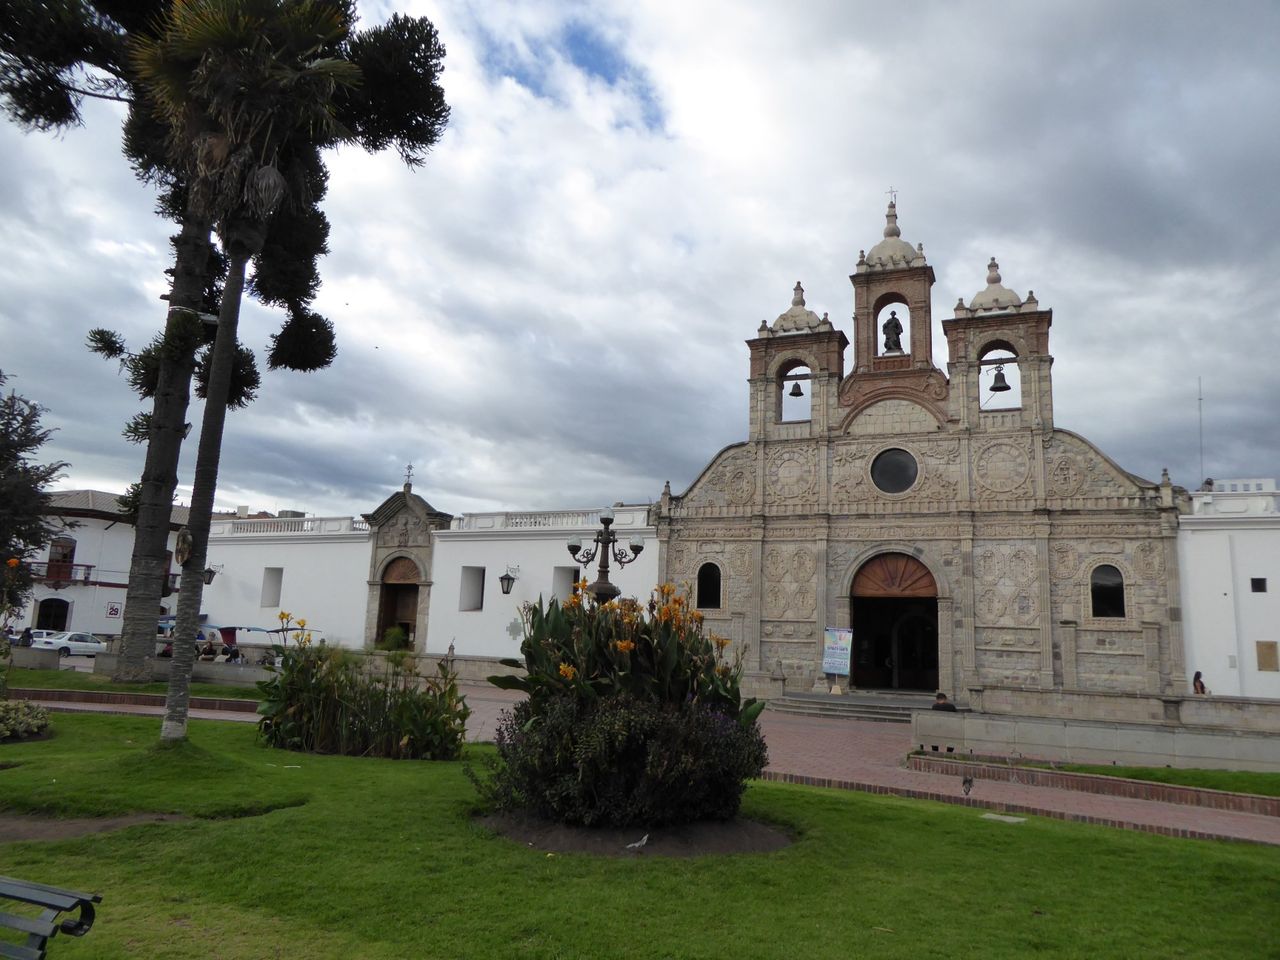 Het onthullen van de majestueuze glorie van La Catedral in Riobamba